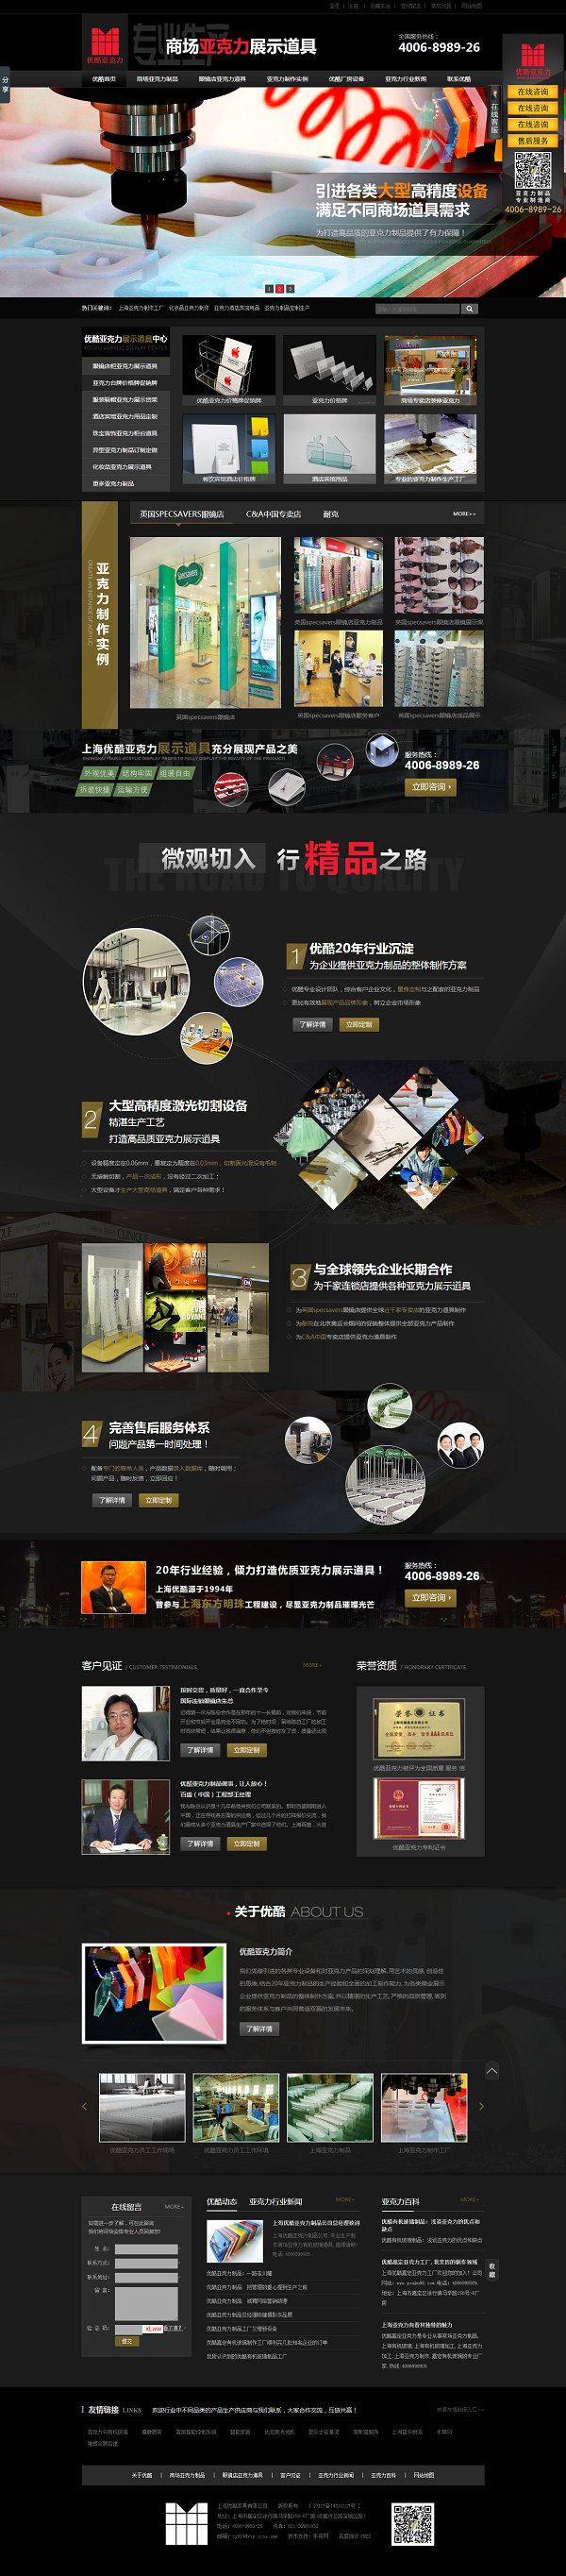 上海优酷亚克力营销型网站